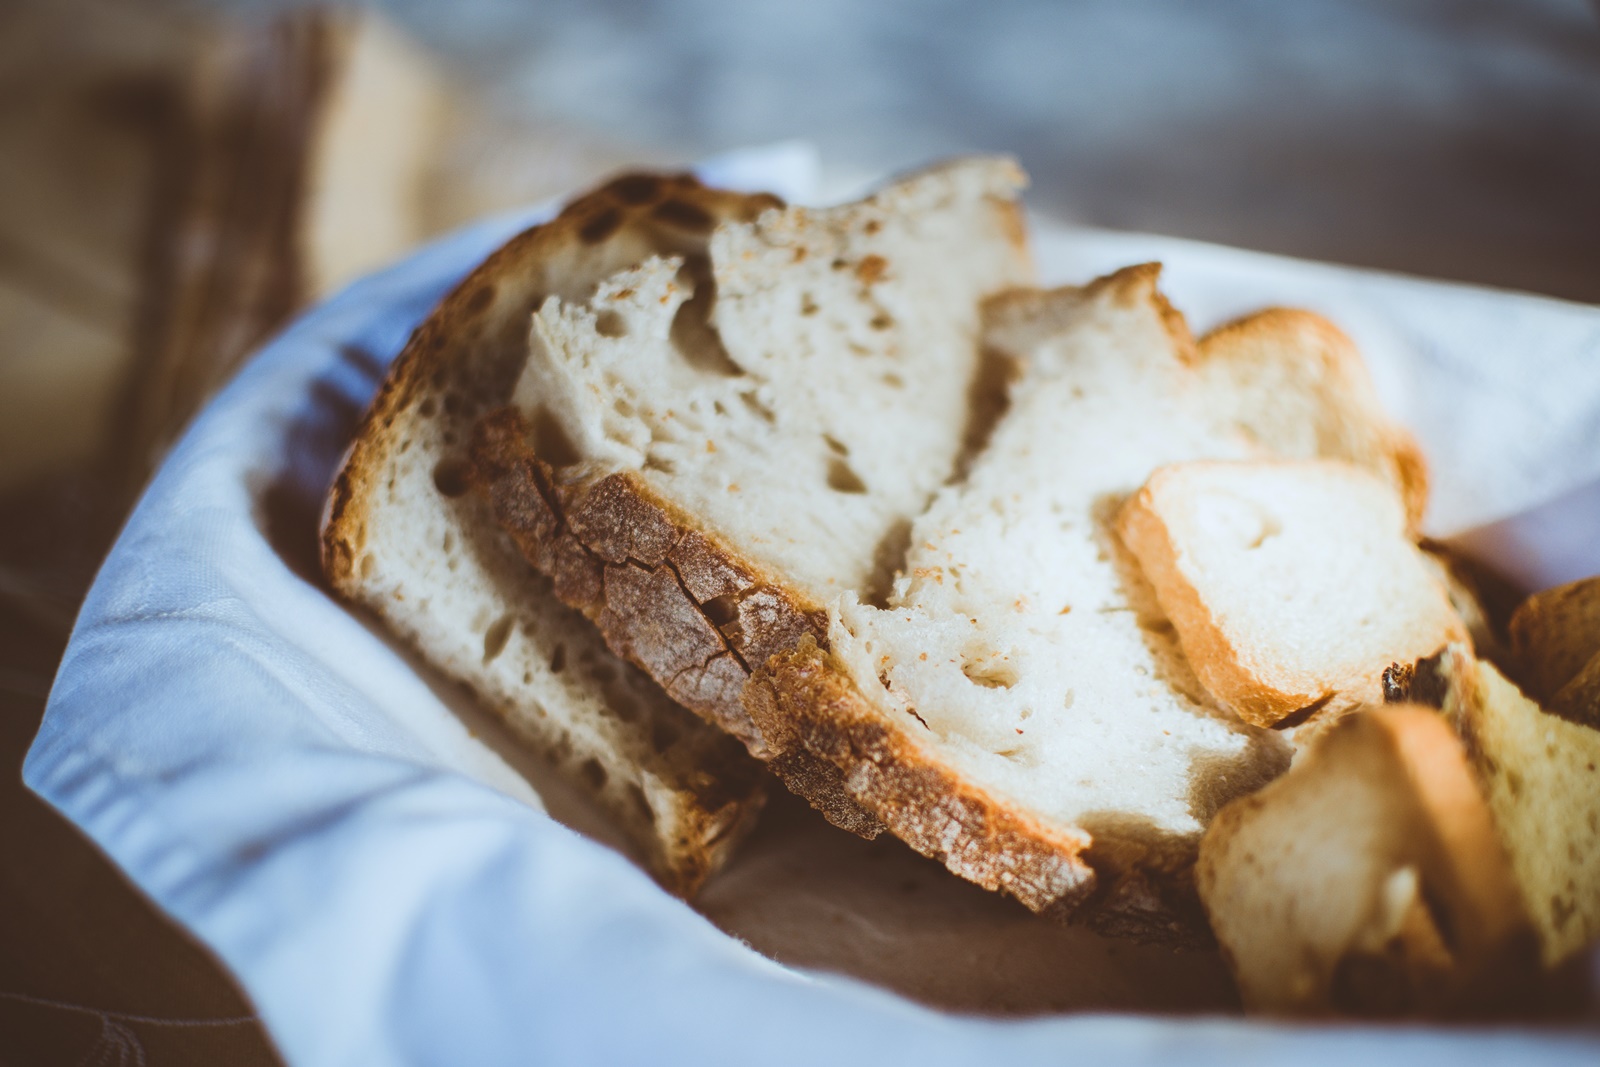 Σταθερές τιμές στο ψωμί ζήτησε ο Κώστας Σκρέκας από τους αρτοποιούς